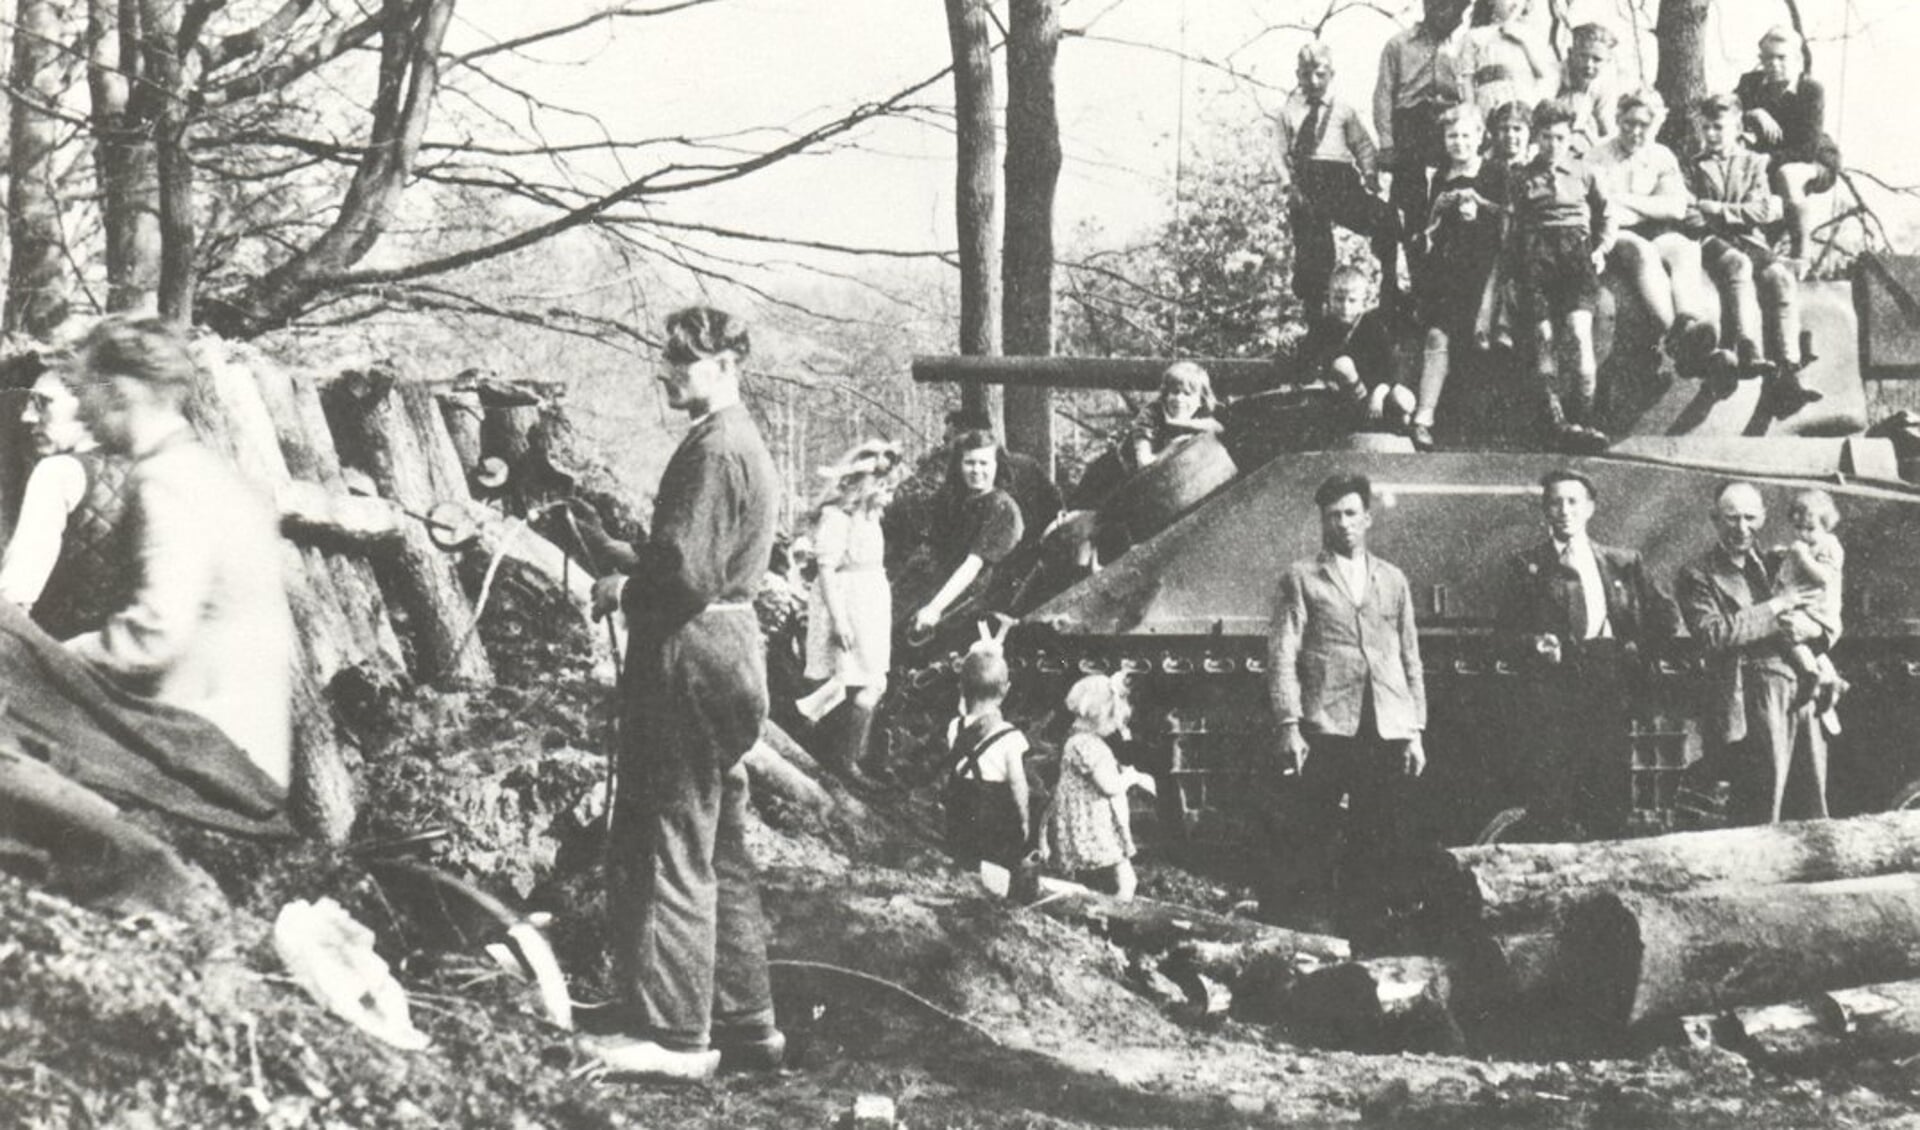 Om het bosgebied ‘De Heuveltjes’ werd fanatiek strijd geleverd. Op 18 april trokken de daar opgestelde Sherman-tanks veel bekijks.